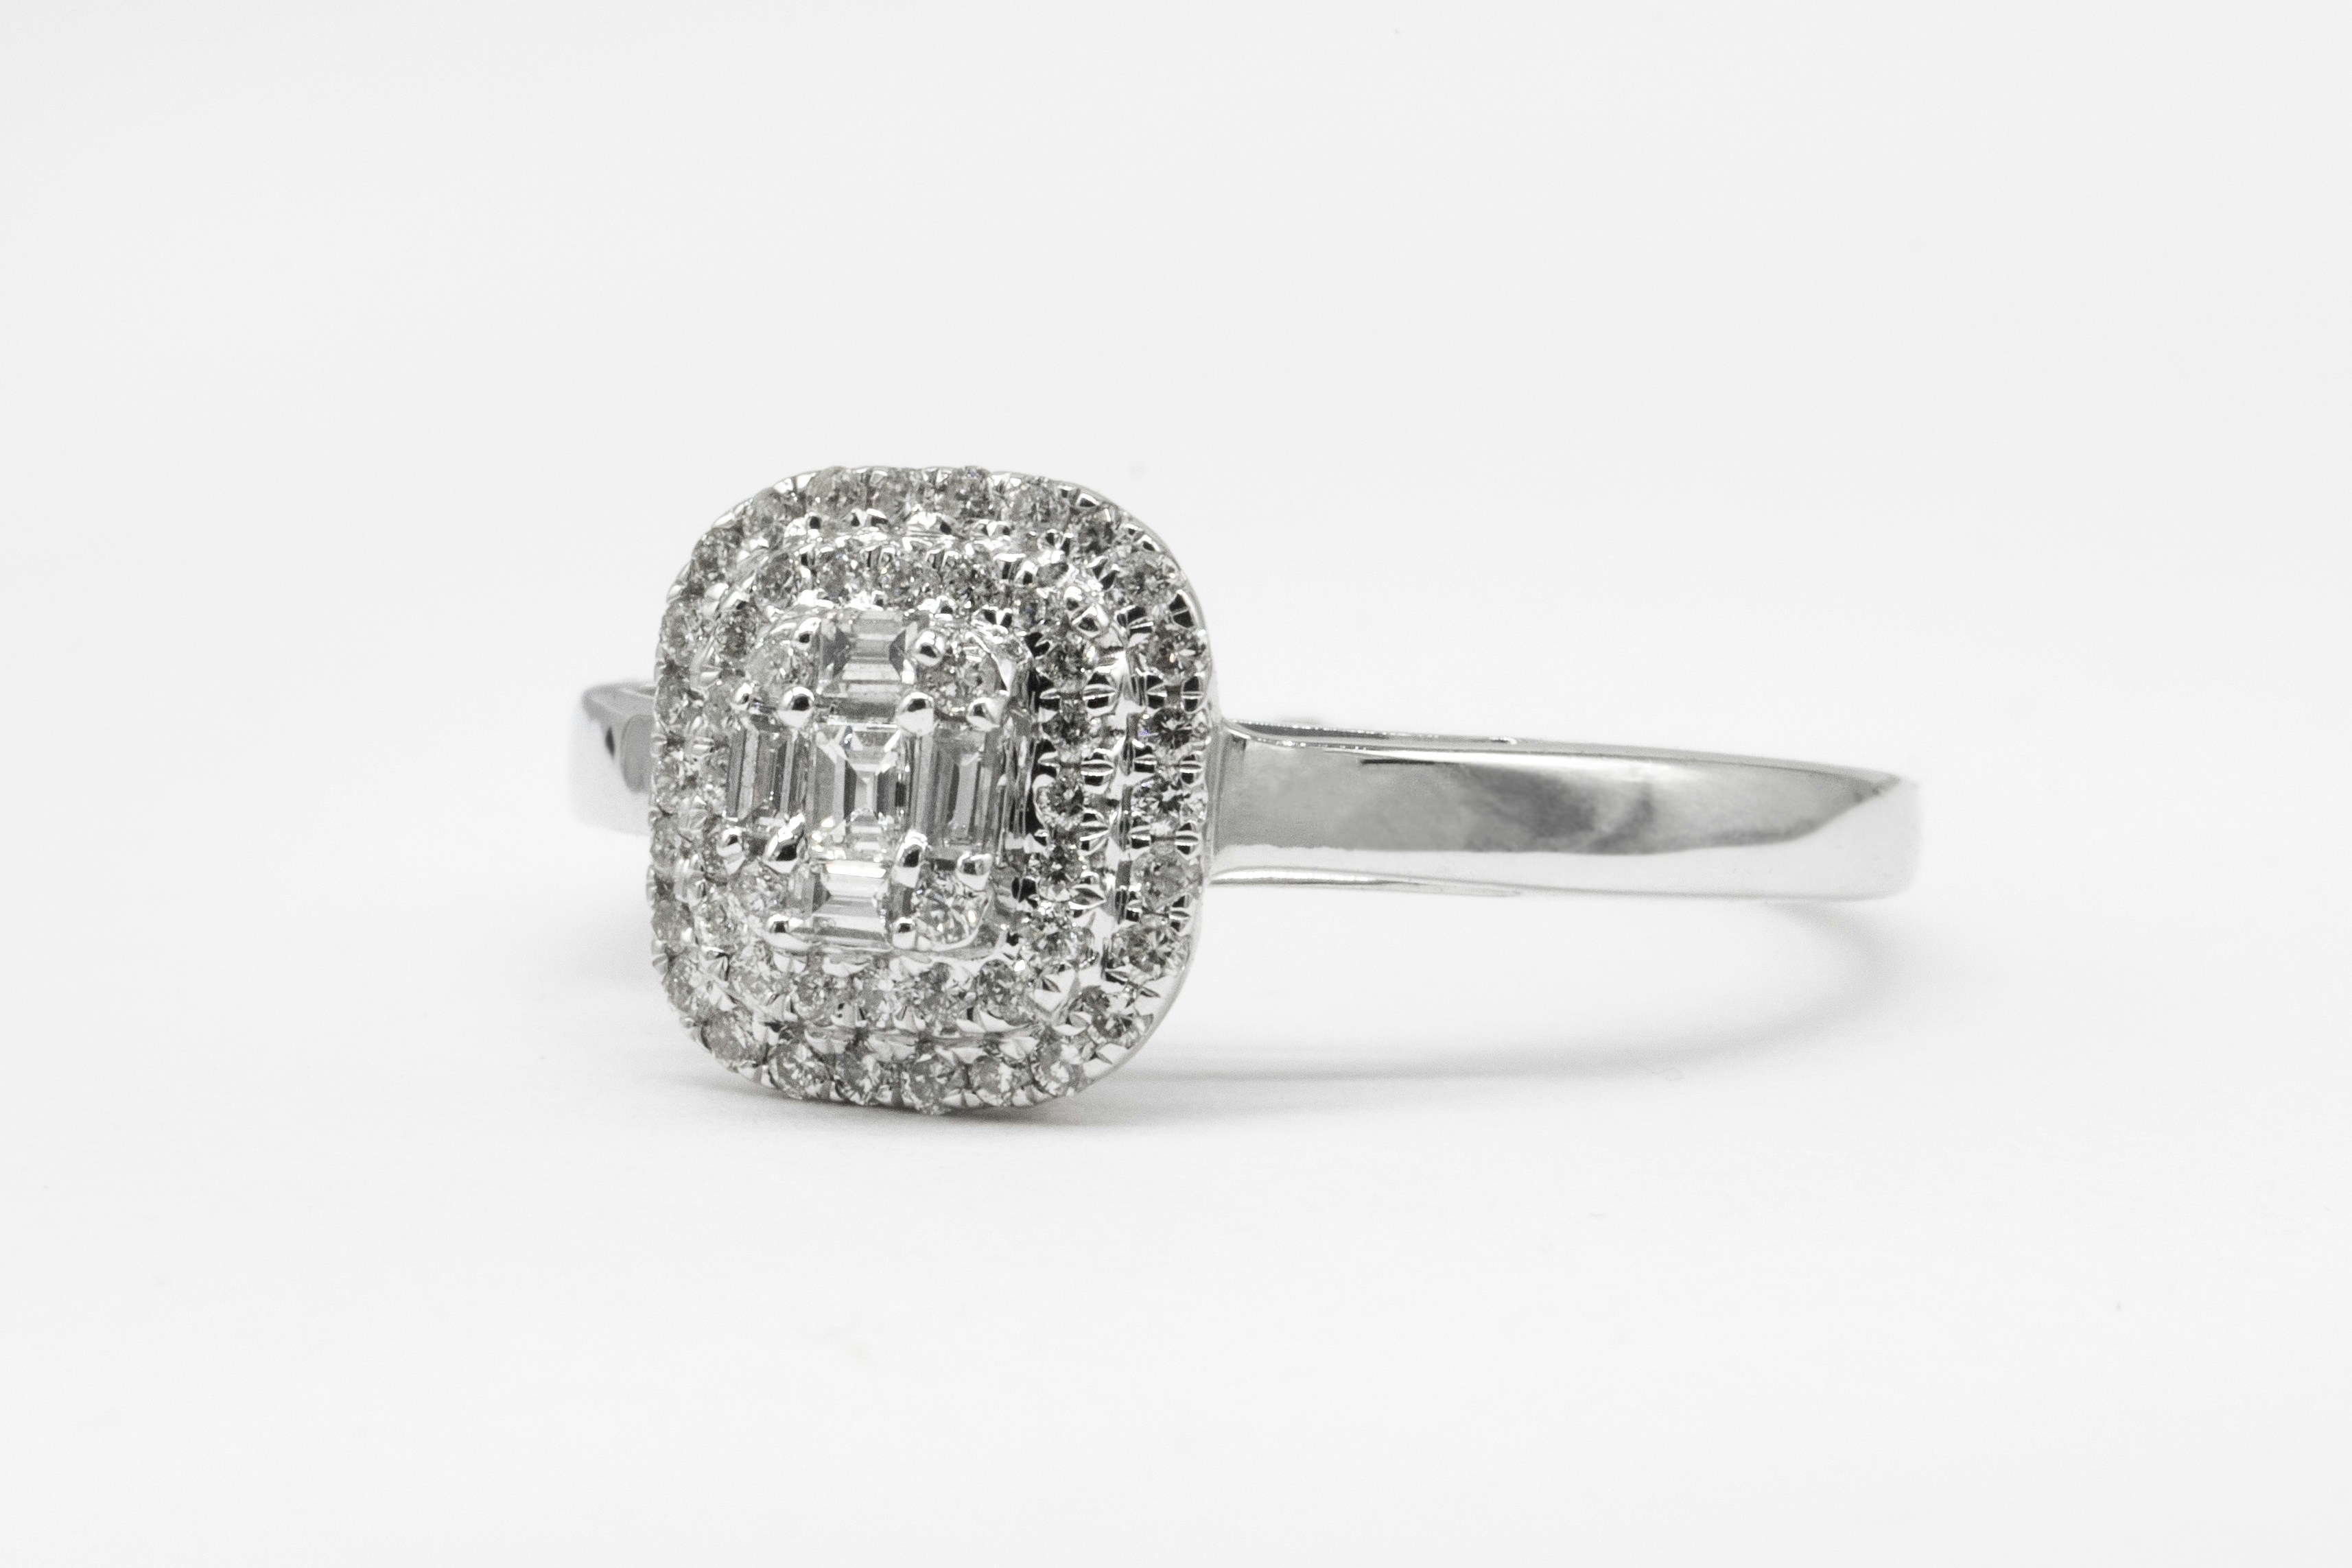 Multi-stone diamond ring